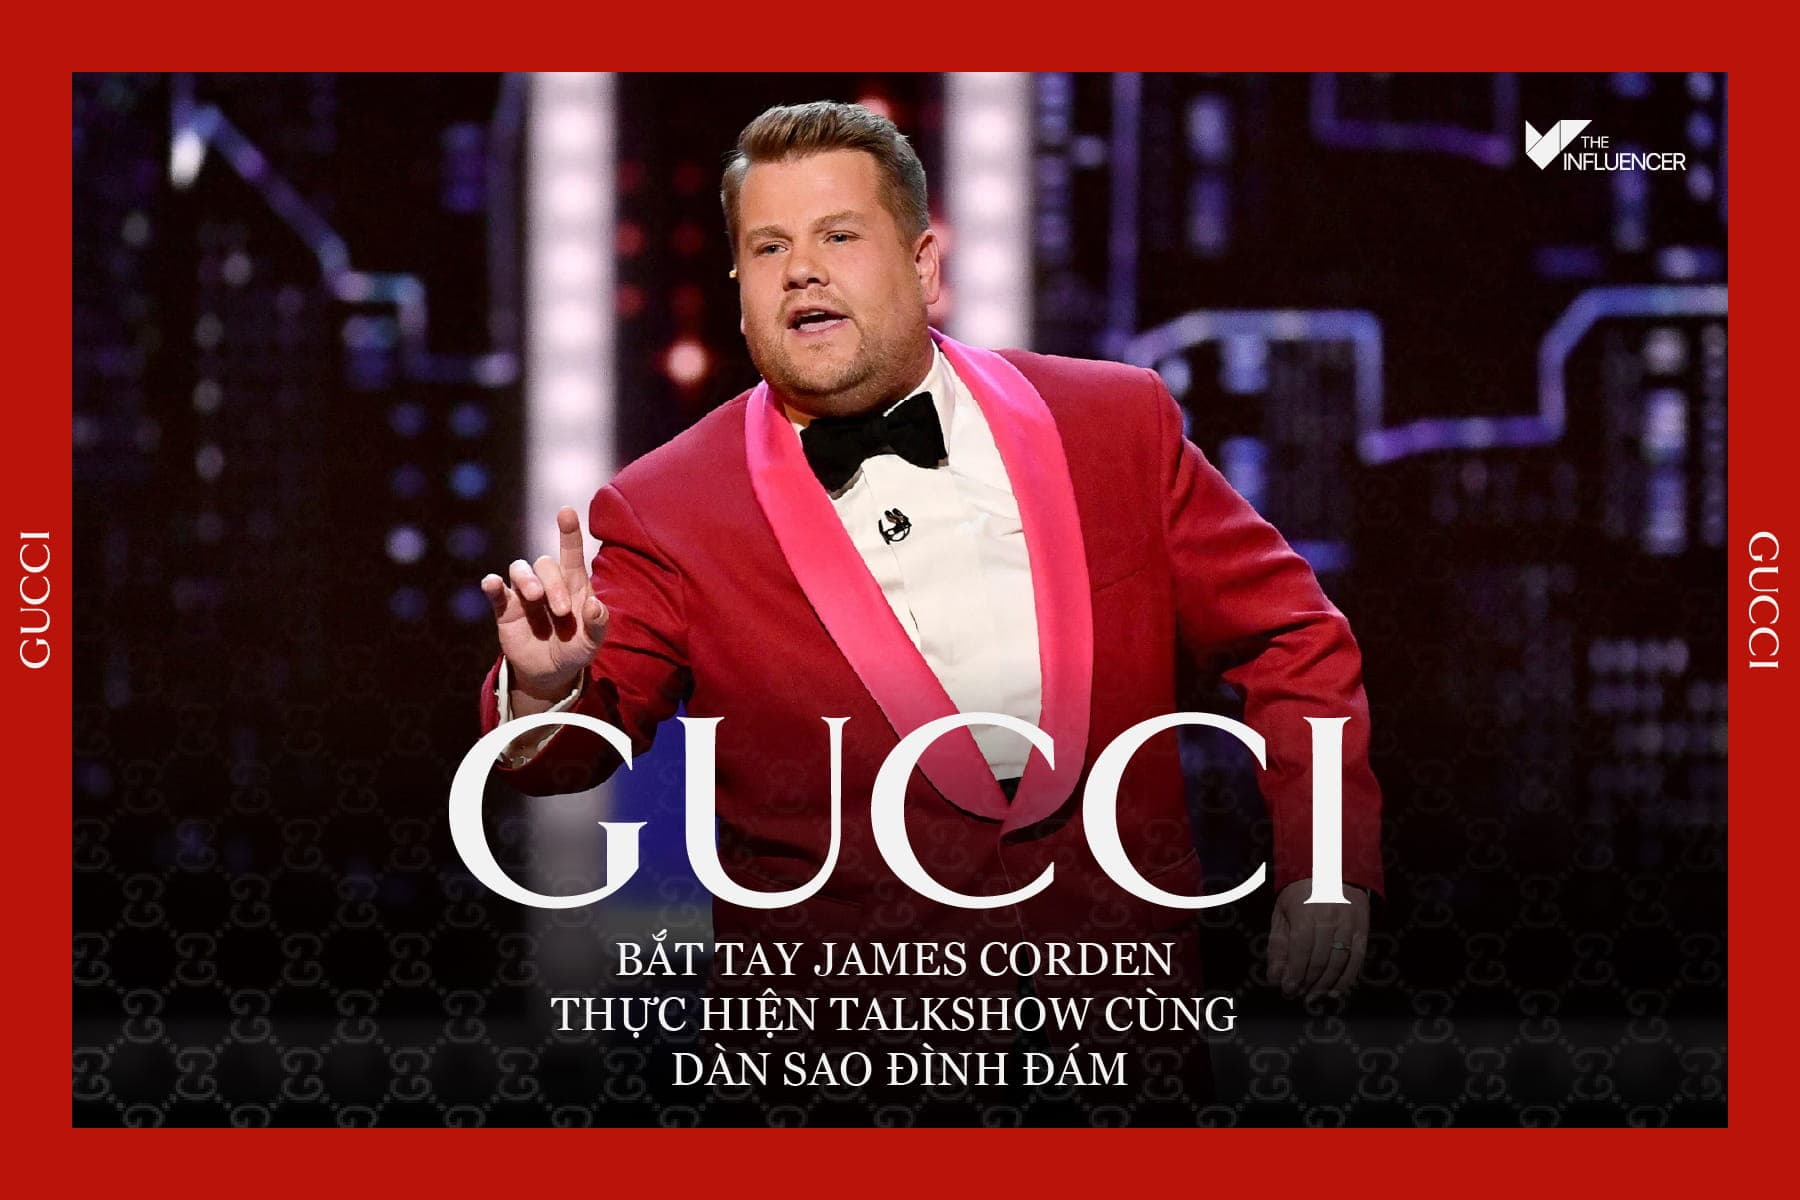 Gucci bắt tay James Corden thực hiện Talkshow cùng dàn sao đình đám